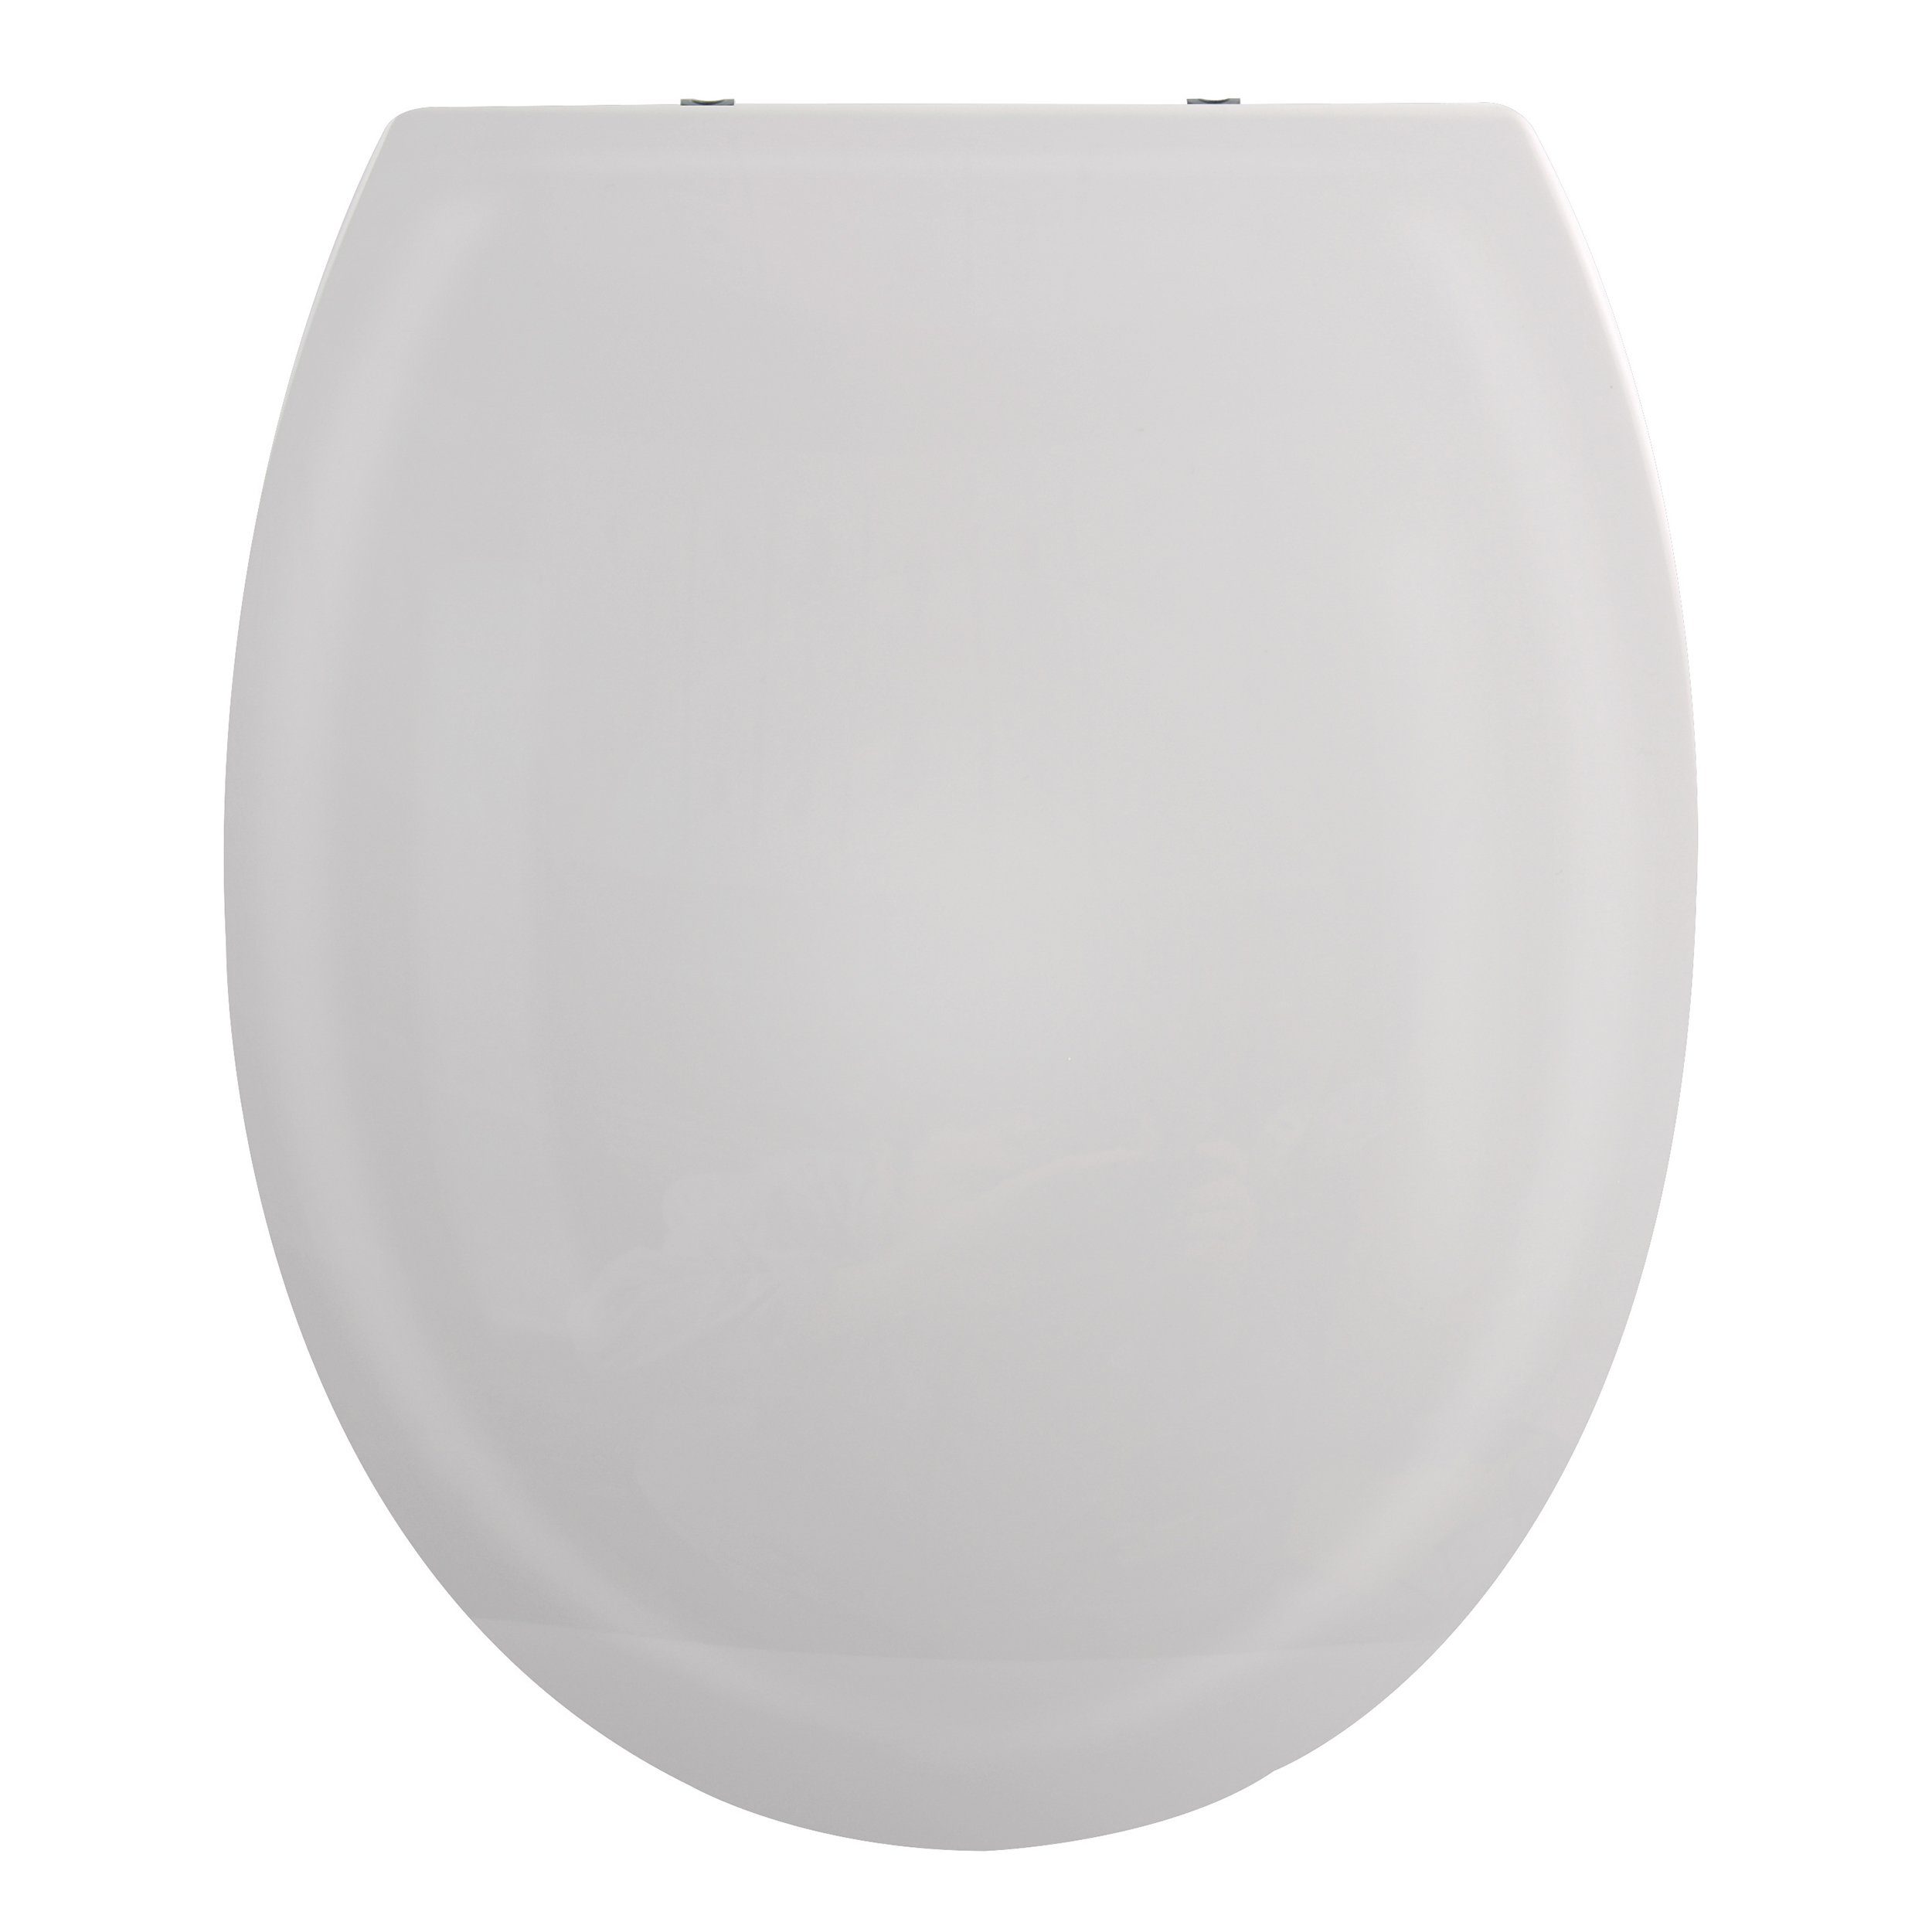 spirella WC-Sitz HARRY, Premium Toilettendeckel aus leichtem PP Thermoplast Kunststoff, hohe Stabilität, bruchsicher, Edelstahl Scharniere mit Quick-Release-Funktion zur einfachen Schnellreinigung, Soft Close Absenkautomatik, oval, hellgrau